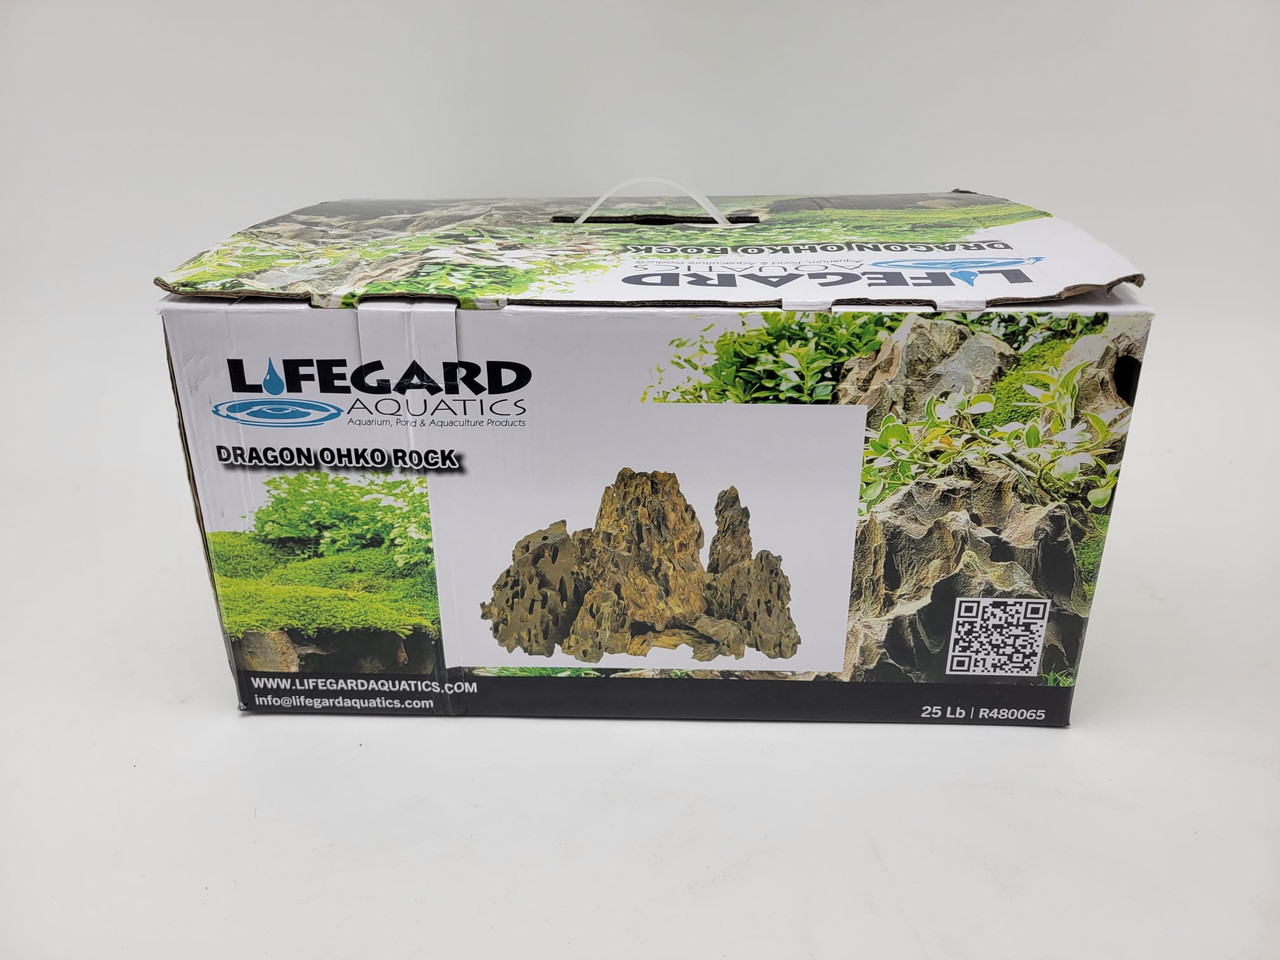 Lifegard Dragon Ohko Rock - 25 lbs Mix Size Kit 